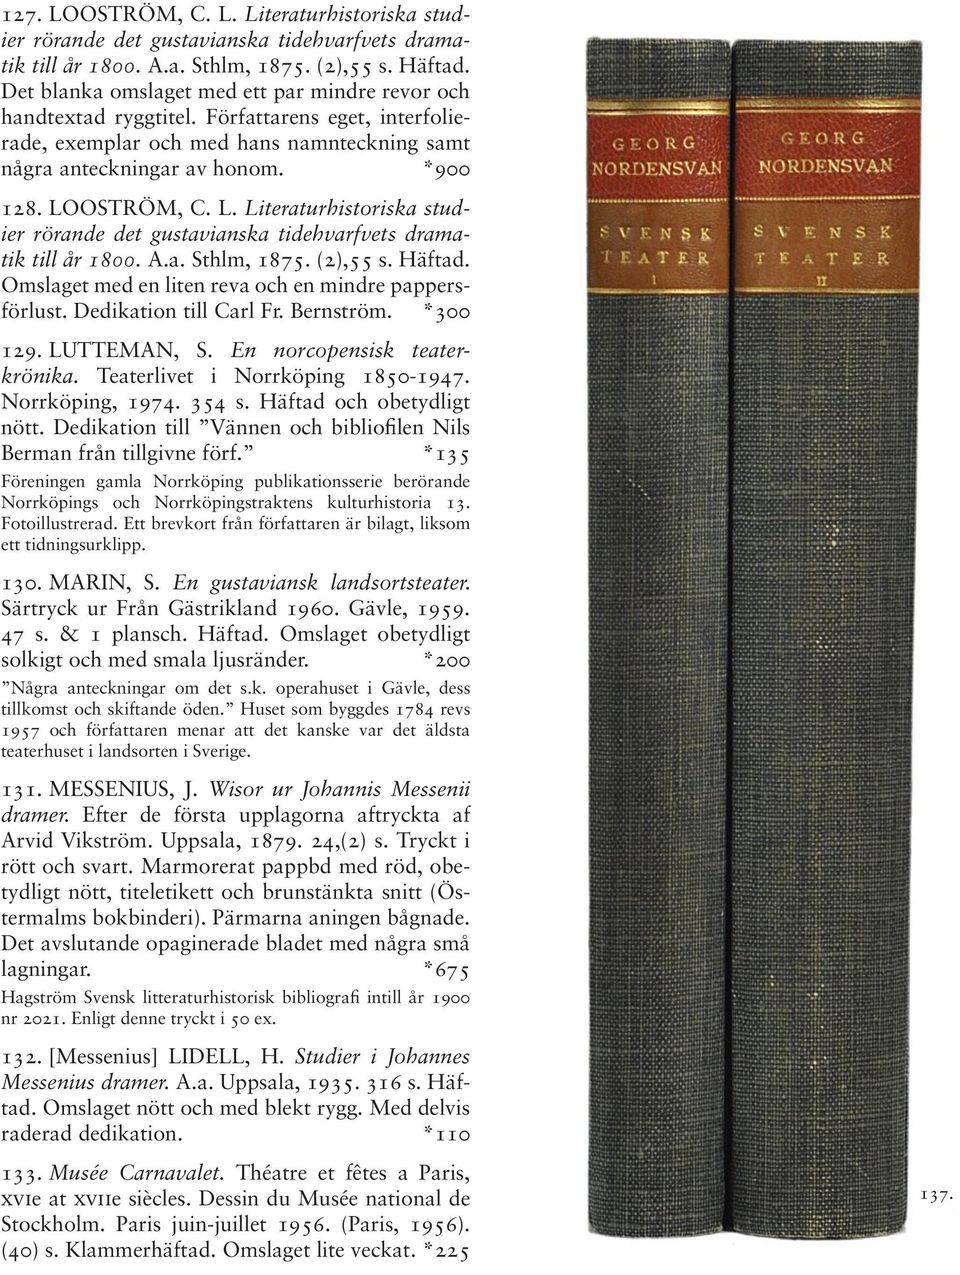 OSTRÖM, C. L. Literaturhistoriska studier rörande det gustavianska tidehvarfvets dramatik till år 1800. A.a. Sthlm, 1875. (2),55 s. Häftad. Omslaget med en liten reva och en mindre pappersförlust.